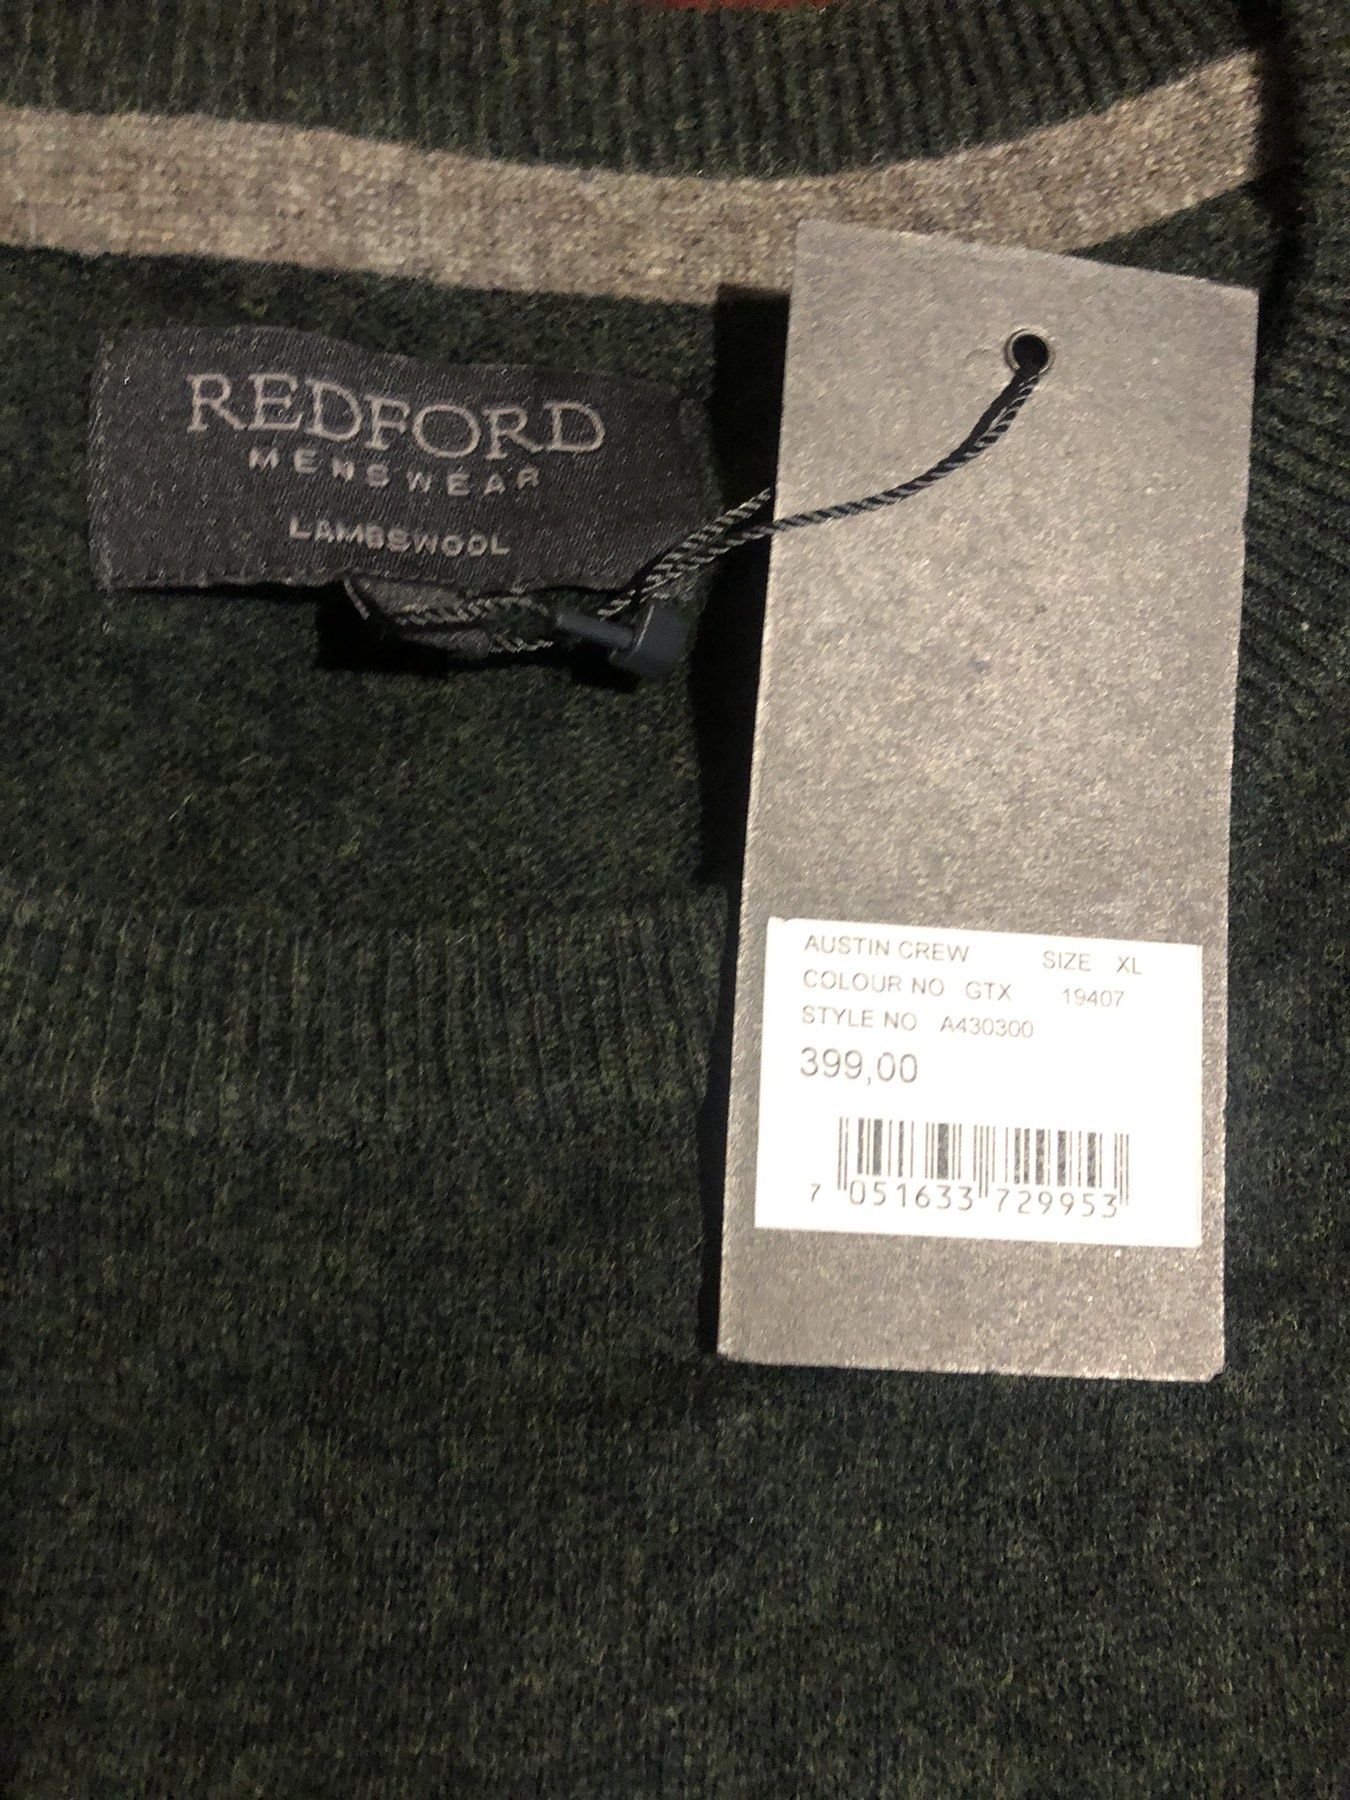 Термо кофта, Redford, lambs Wool. XL.